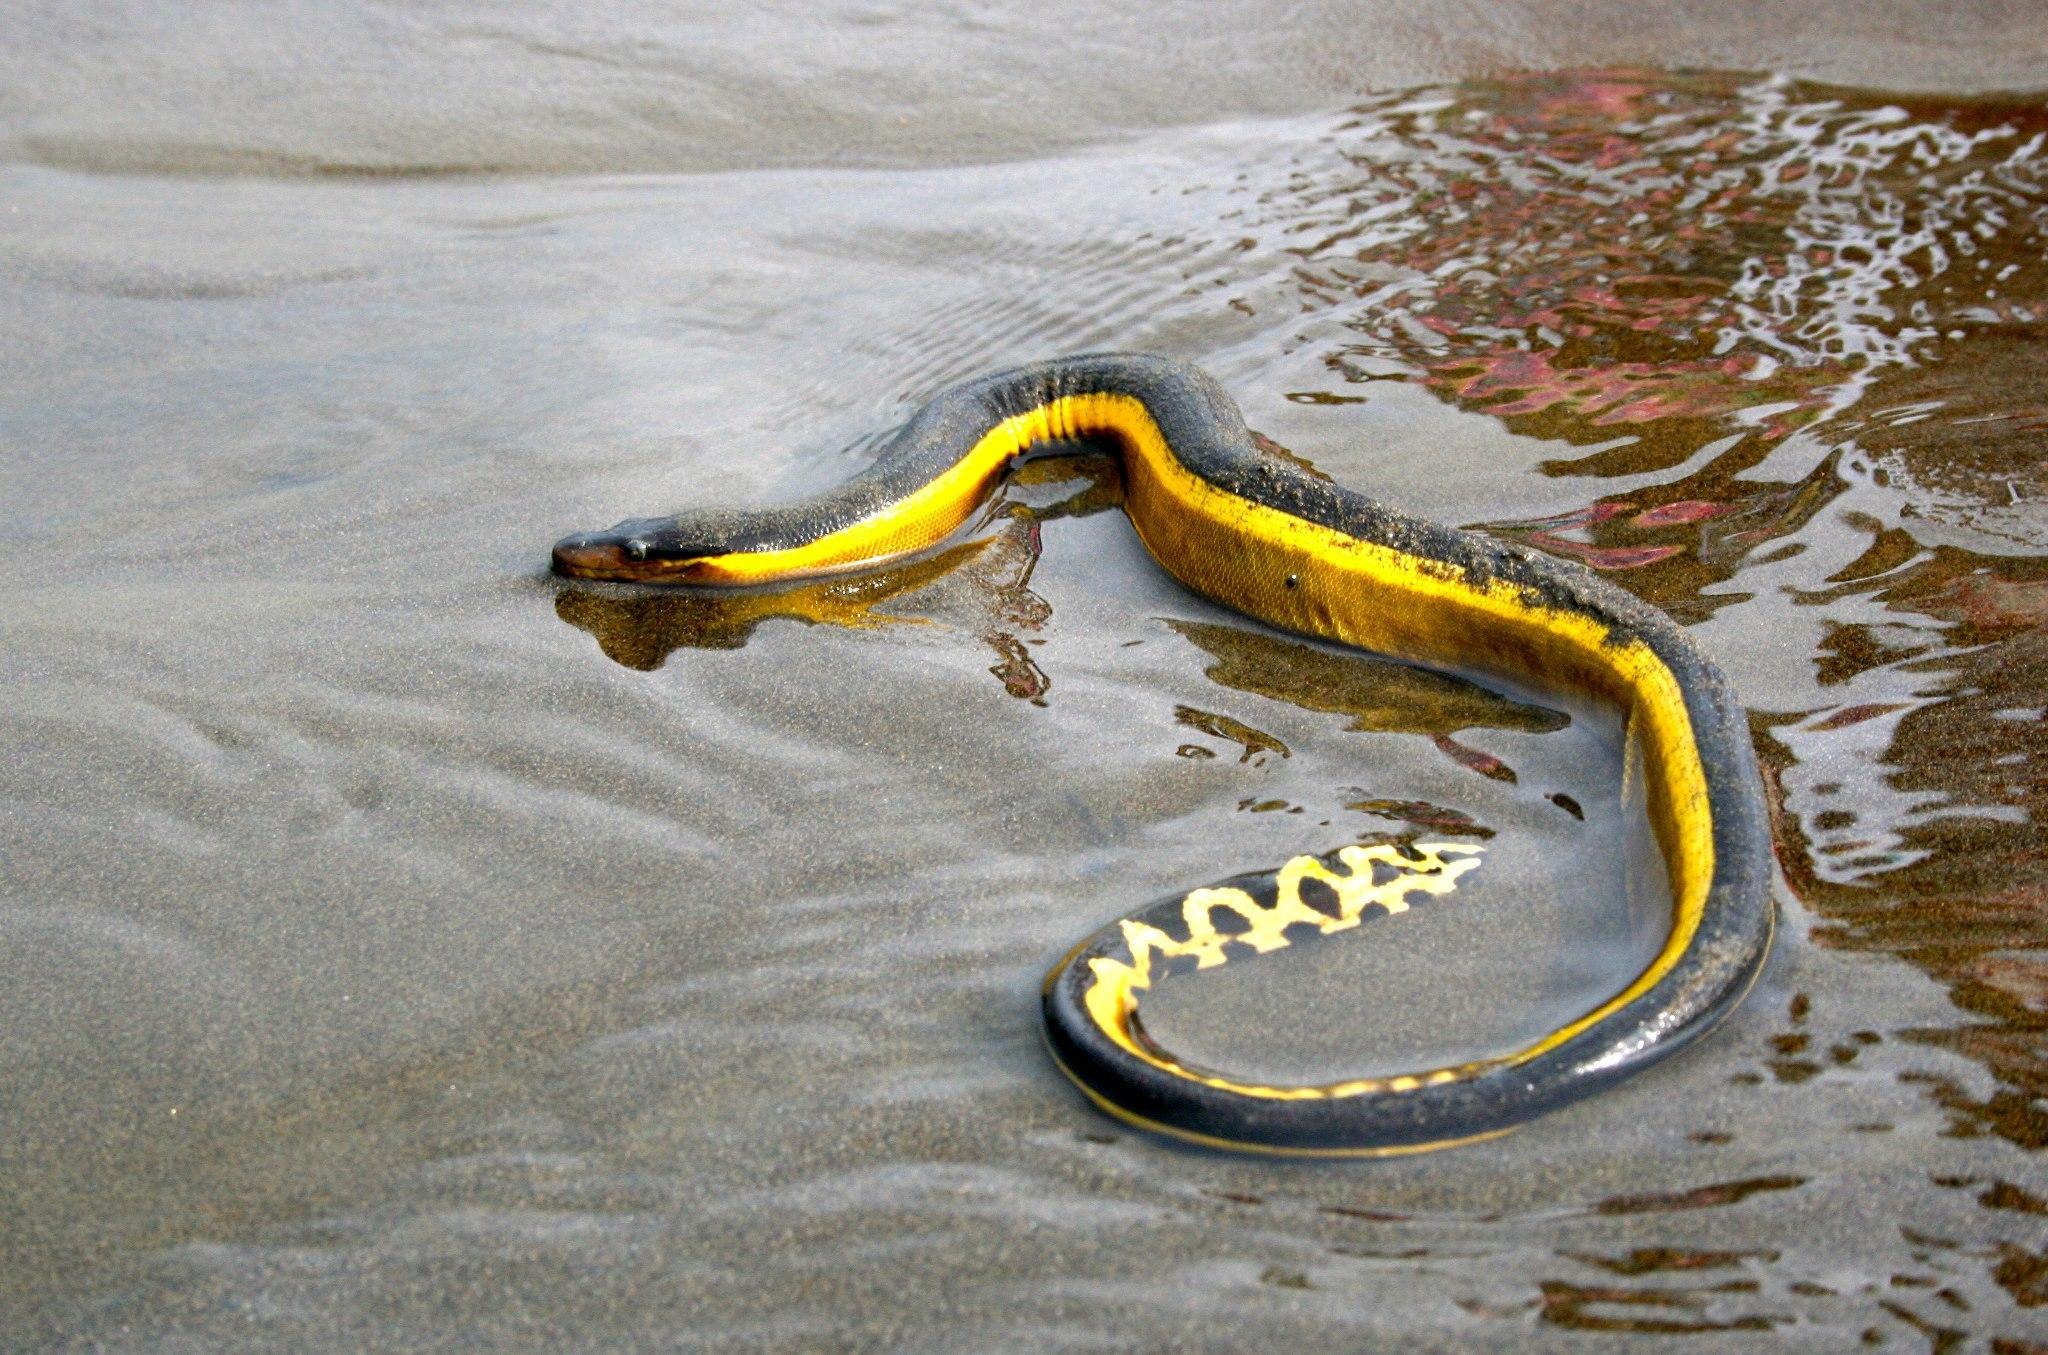 Морские змеи не захотели пить соленую воду и утолили жажду с помощью дождя